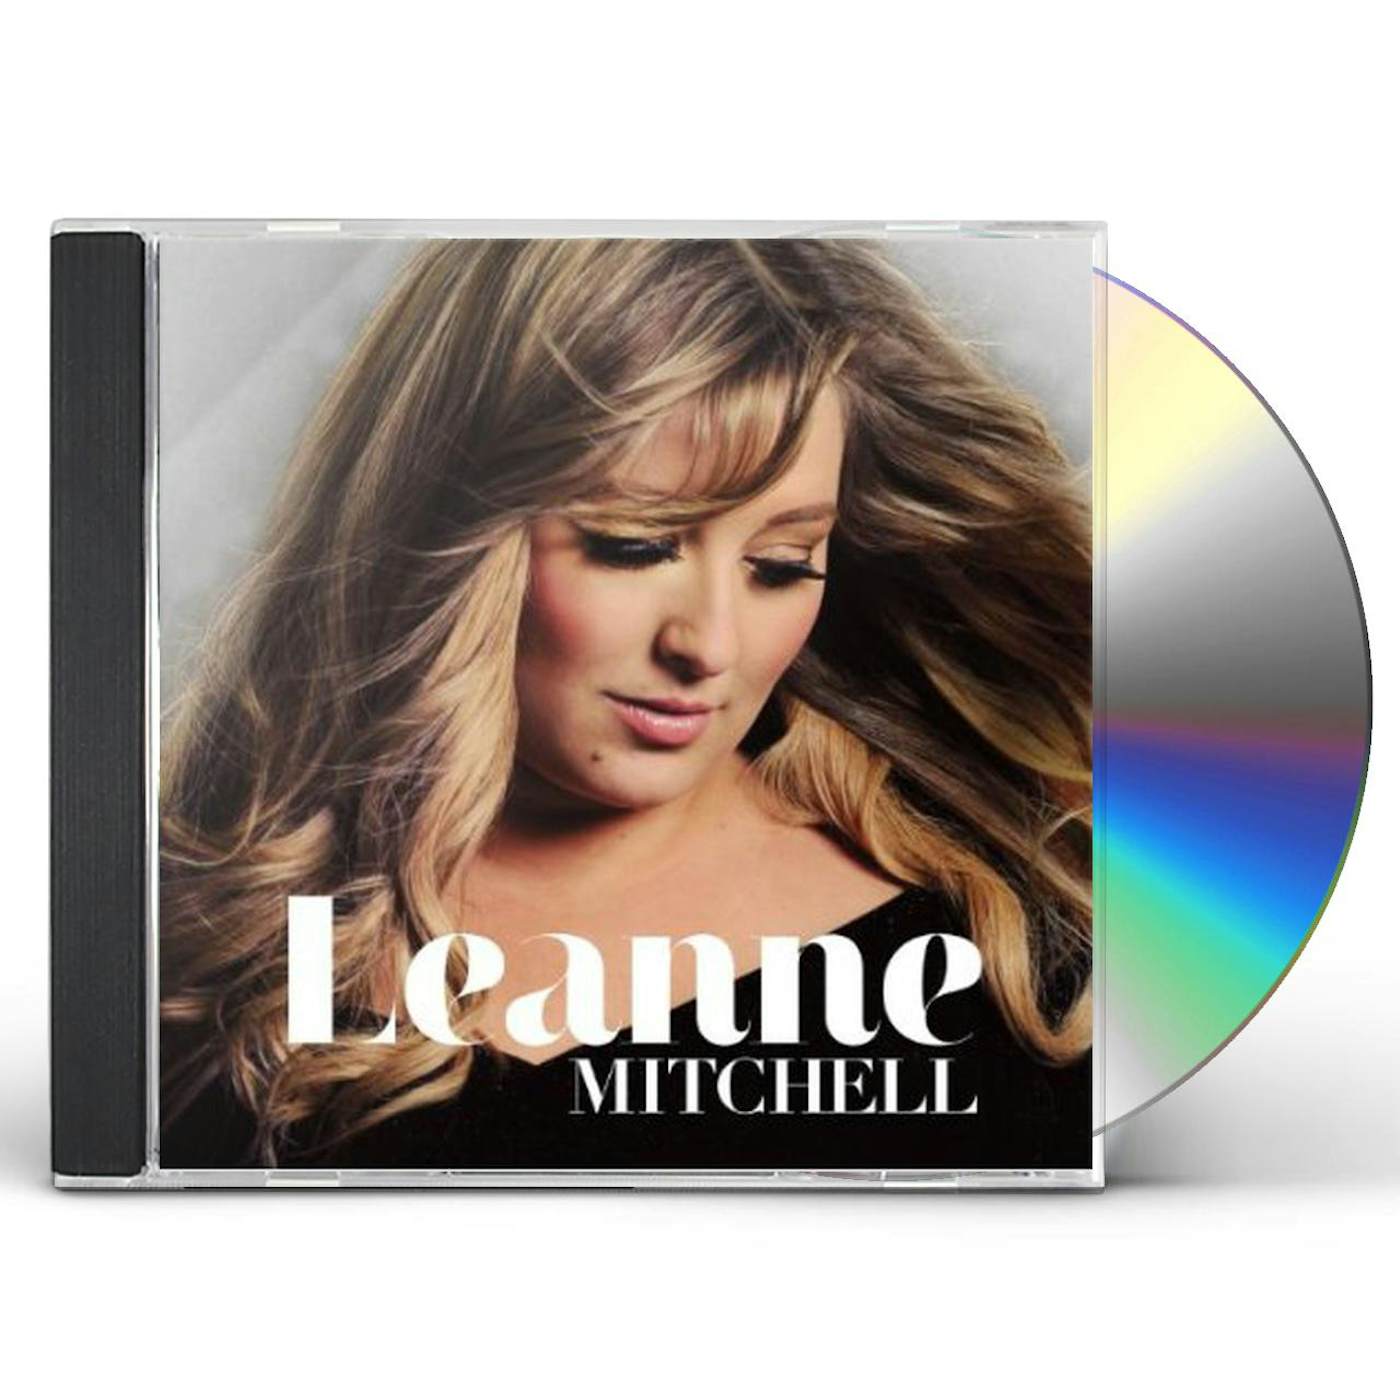 Leanne Mitchell ALBUM CD